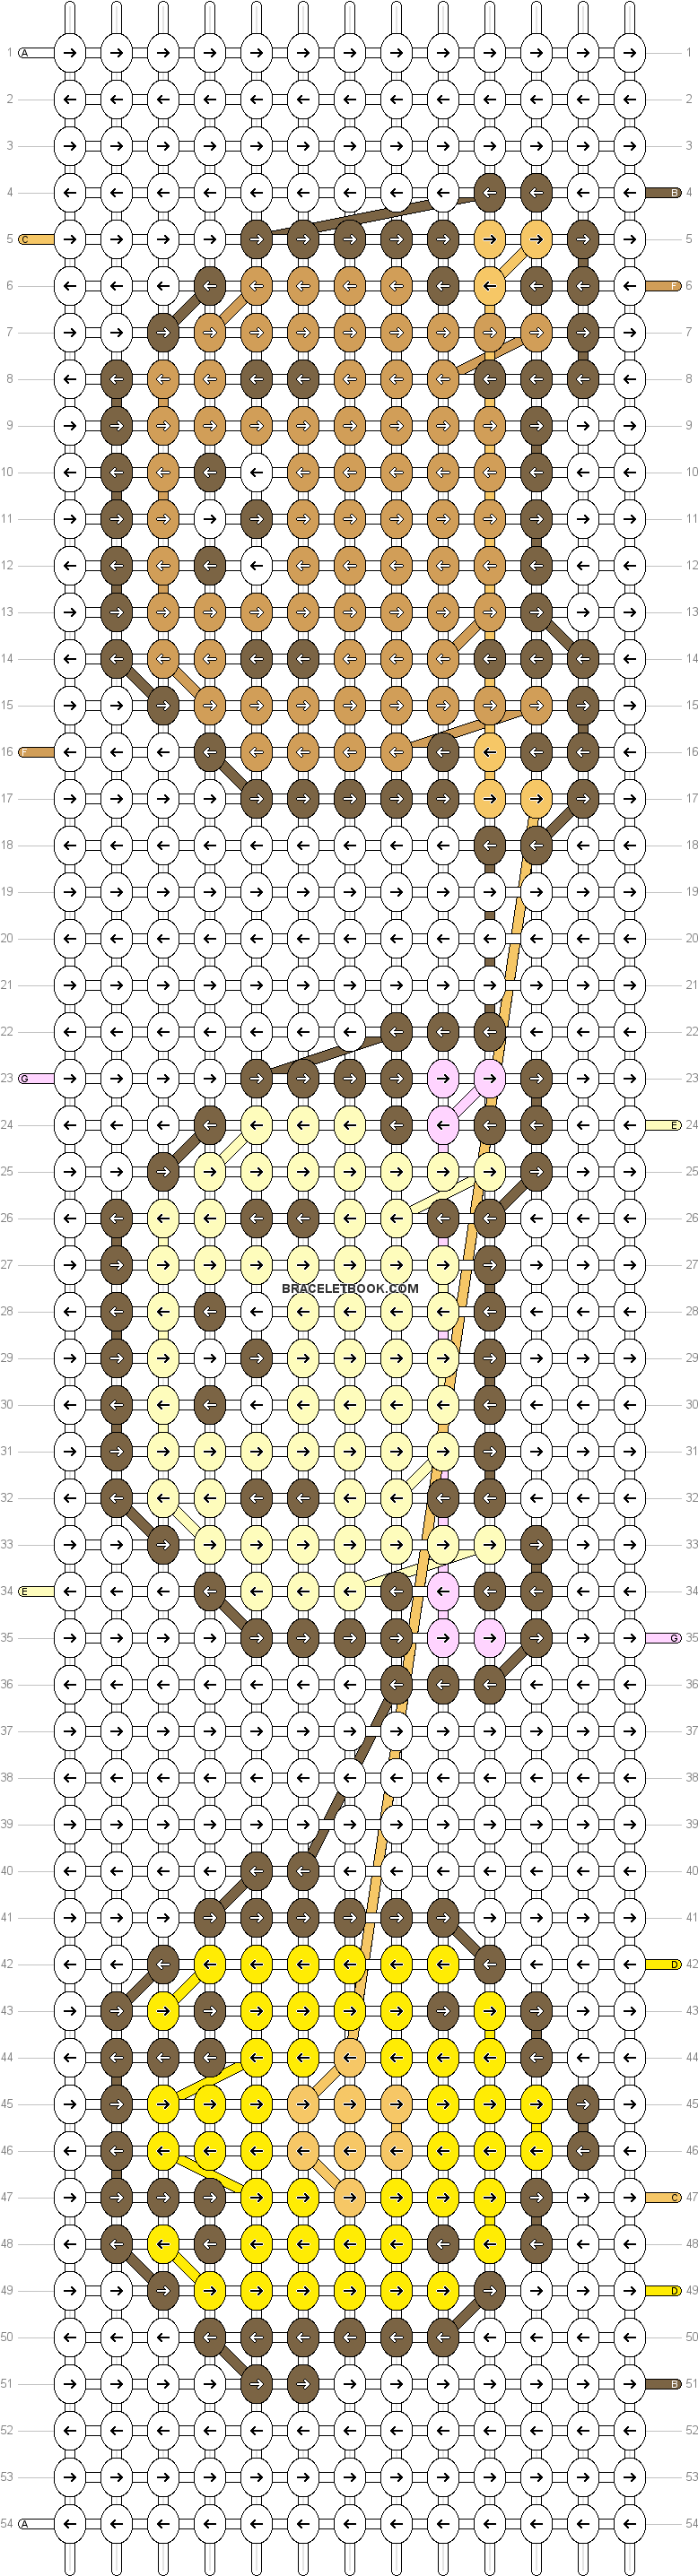 Alpha Pattern - Game Alpha Bracelet Patterns (792x2880), Png Download